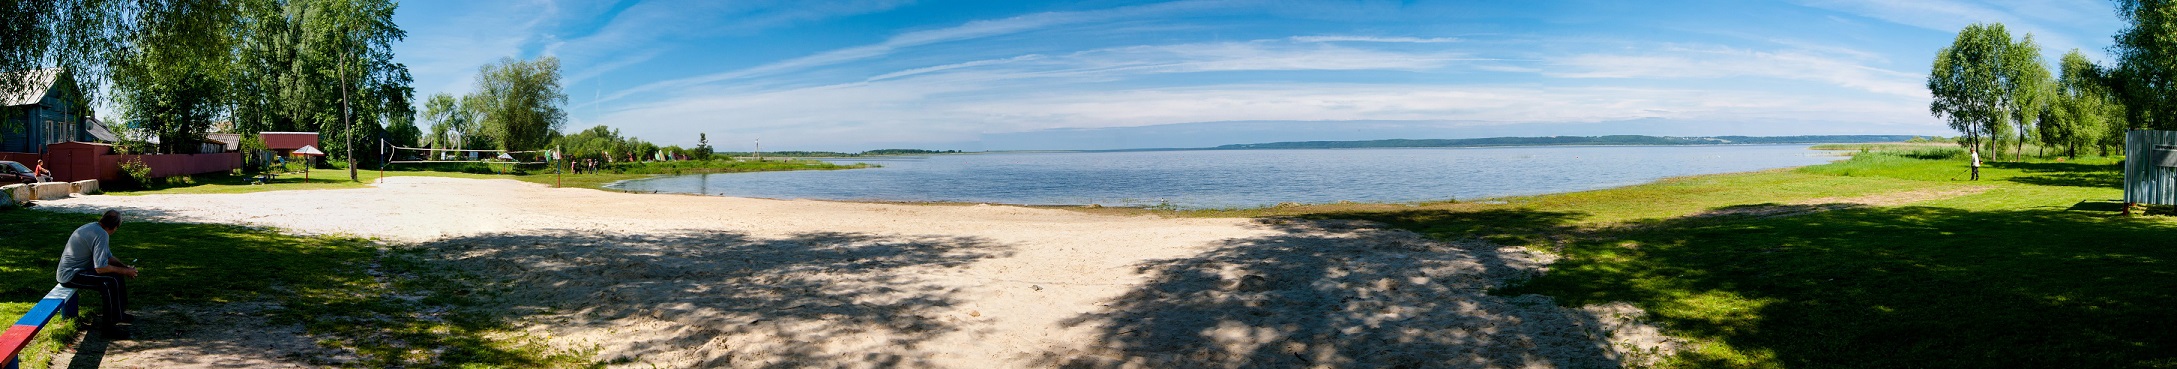 Галичское озеро в Костромской области пляж